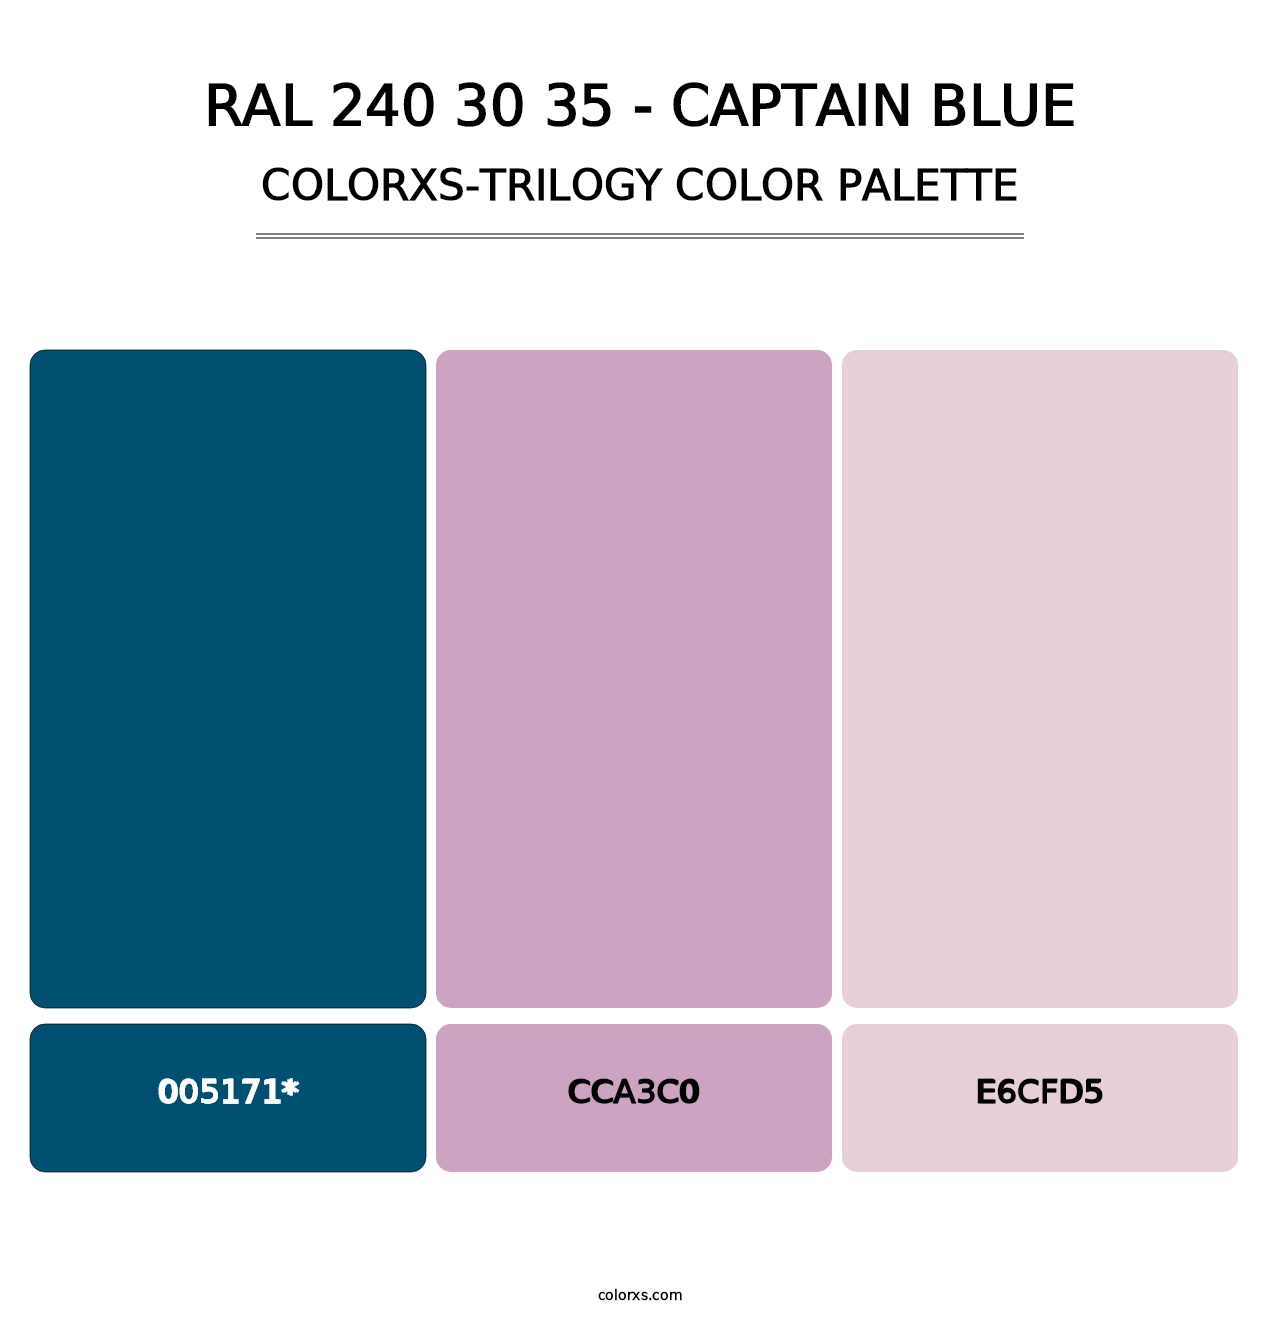 RAL 240 30 35 - Captain Blue - Colorxs Trilogy Palette